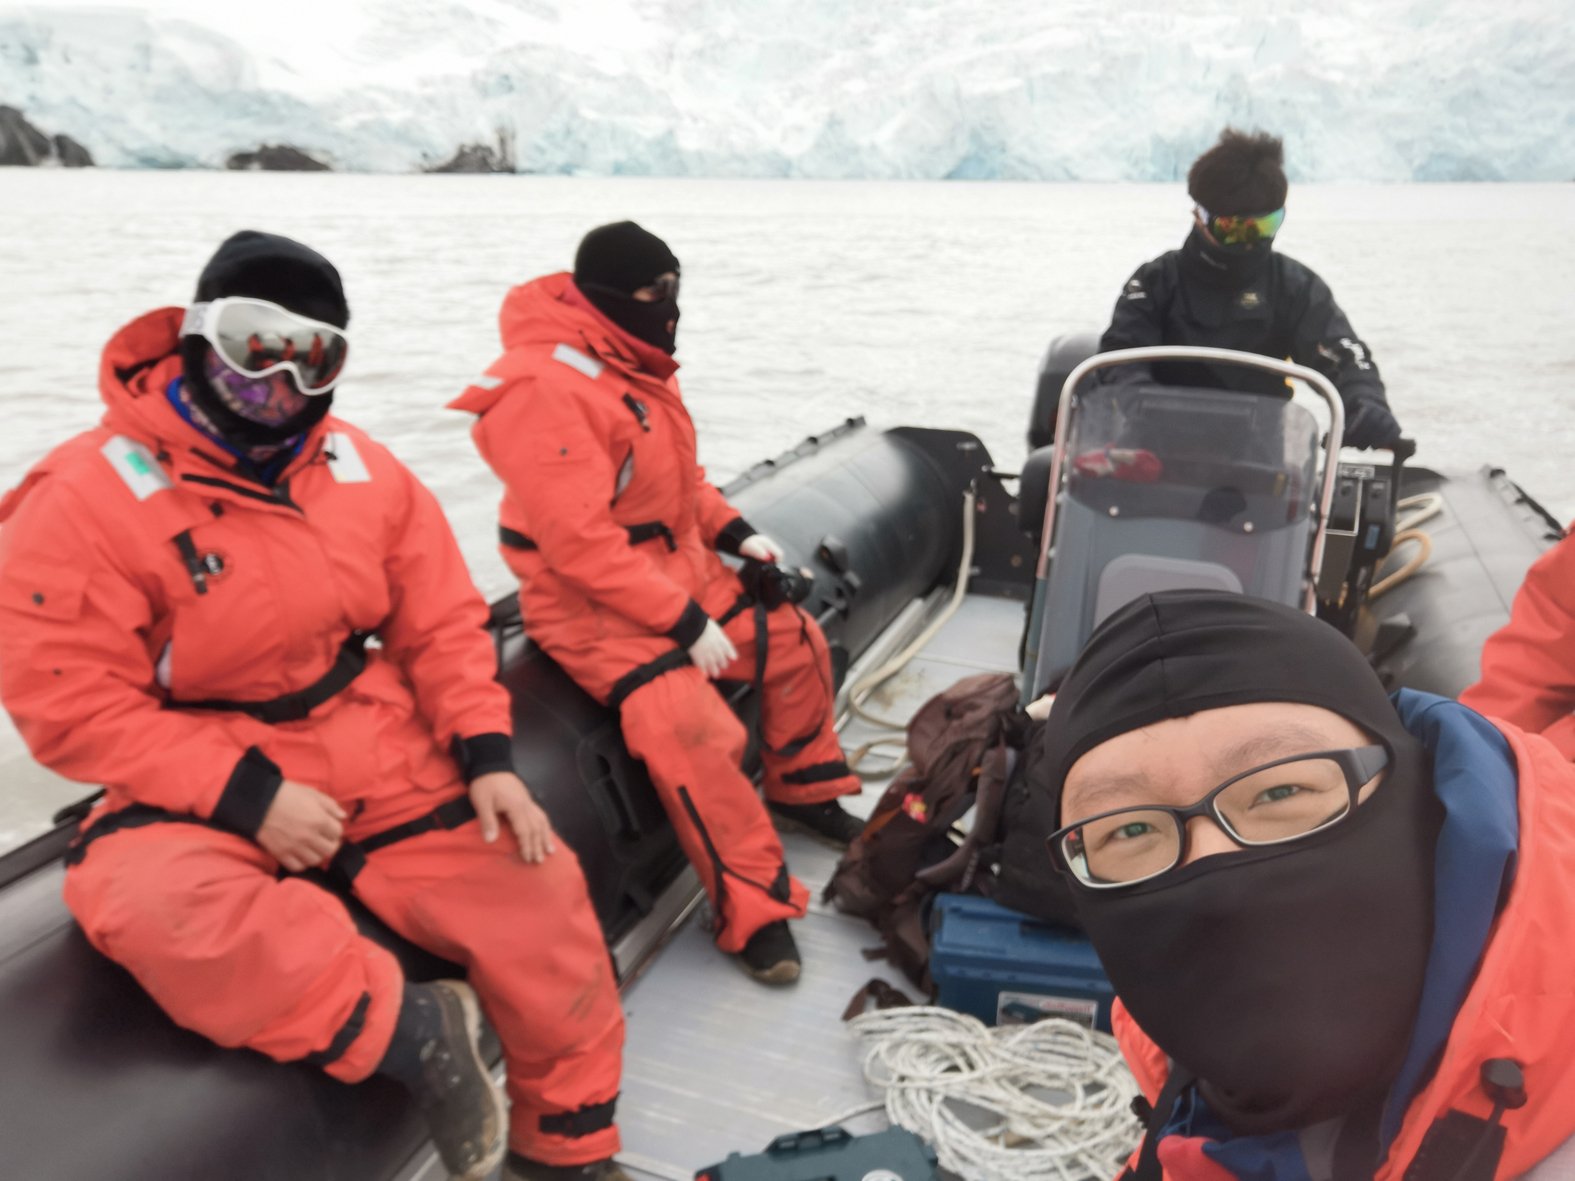 丘忠君表示，在这趟南极考察让他得以和几位来自不同国家的研究伙伴建立友谊。即使如今大家都已经各自回国，但依然保持紧密联系。